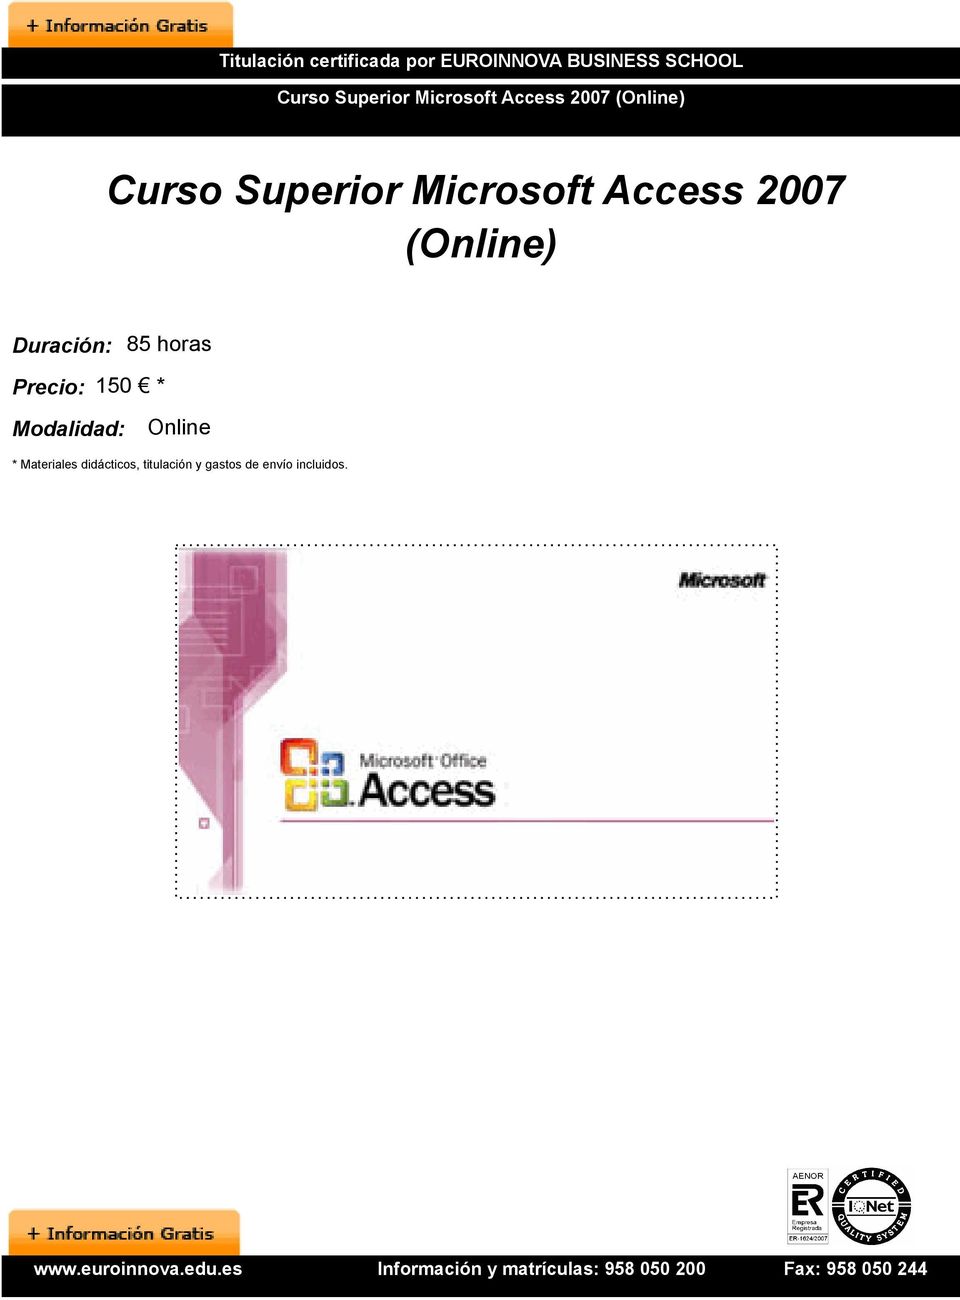 Access 2007 (Online) Duración: 85 horas Precio: 150 * Modalidad: